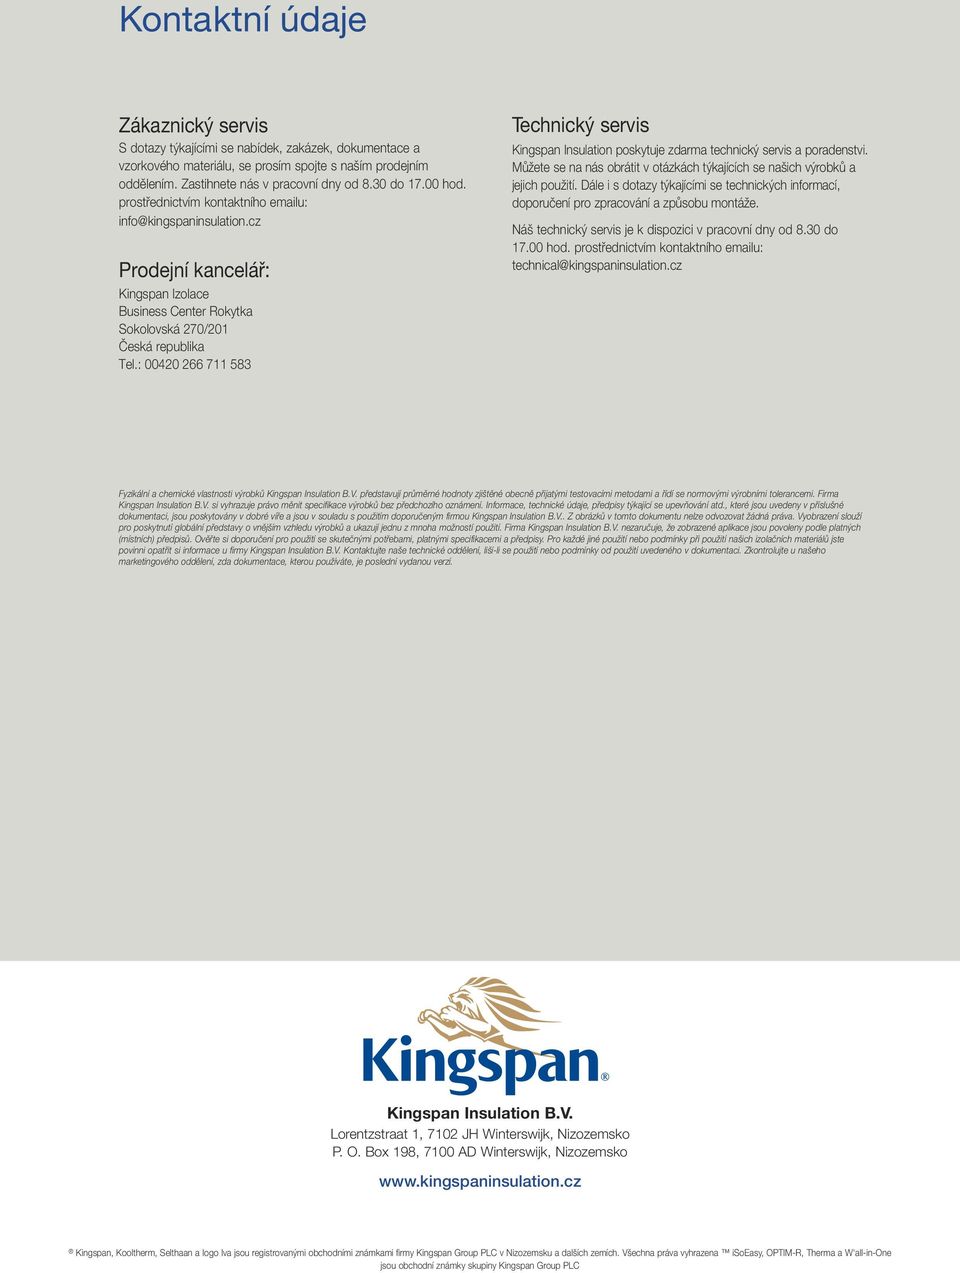 : 00420 266 711 583 Technický servis Kingspan Insulation poskytuje zdarma technický servis a poradenstvi. Můžete se na nás obrátit v otázkách týkajících se našich výrobků a jejich použití.